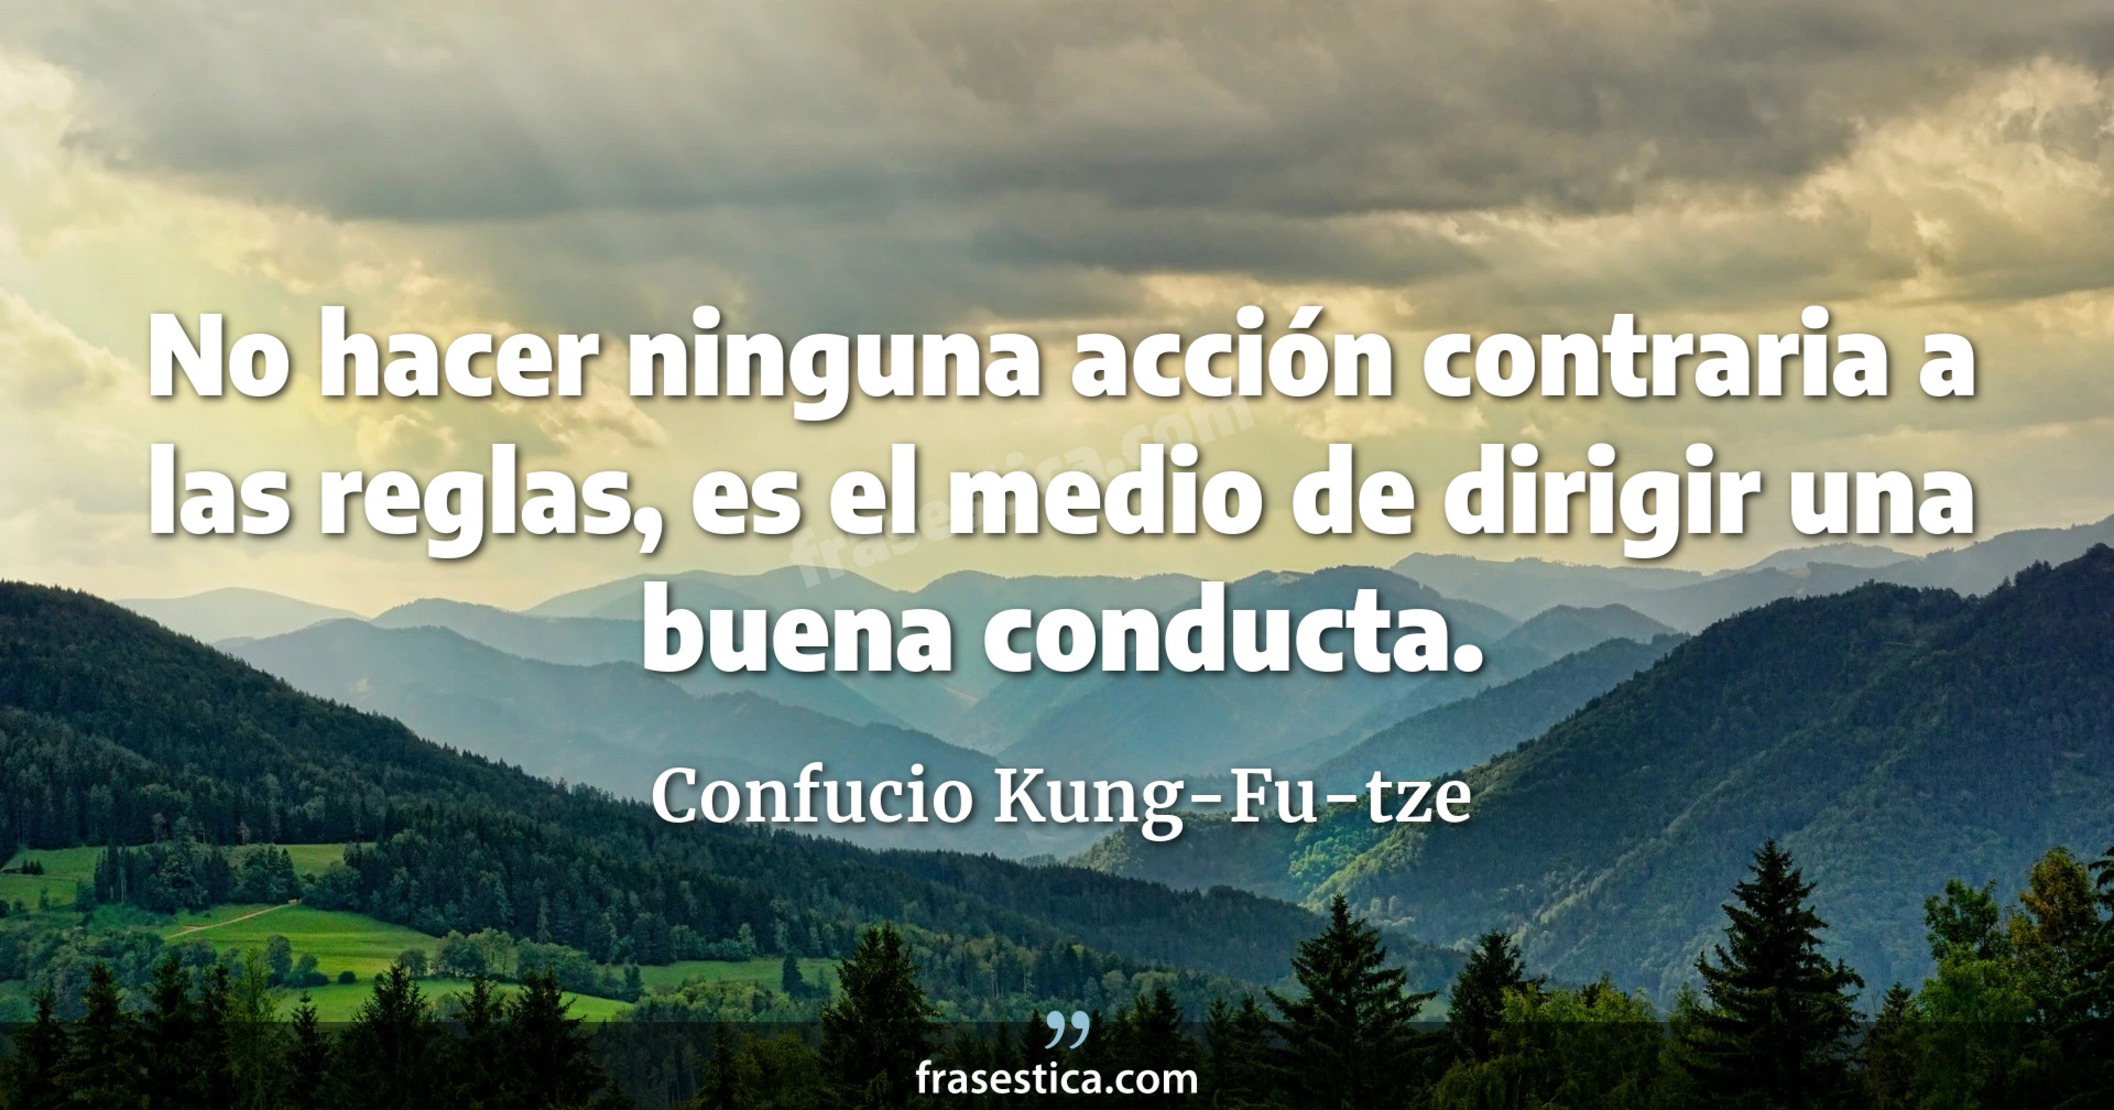 No hacer ninguna acción contraria a las reglas, es el medio de dirigir una buena conducta. - Confucio Kung-Fu-tze